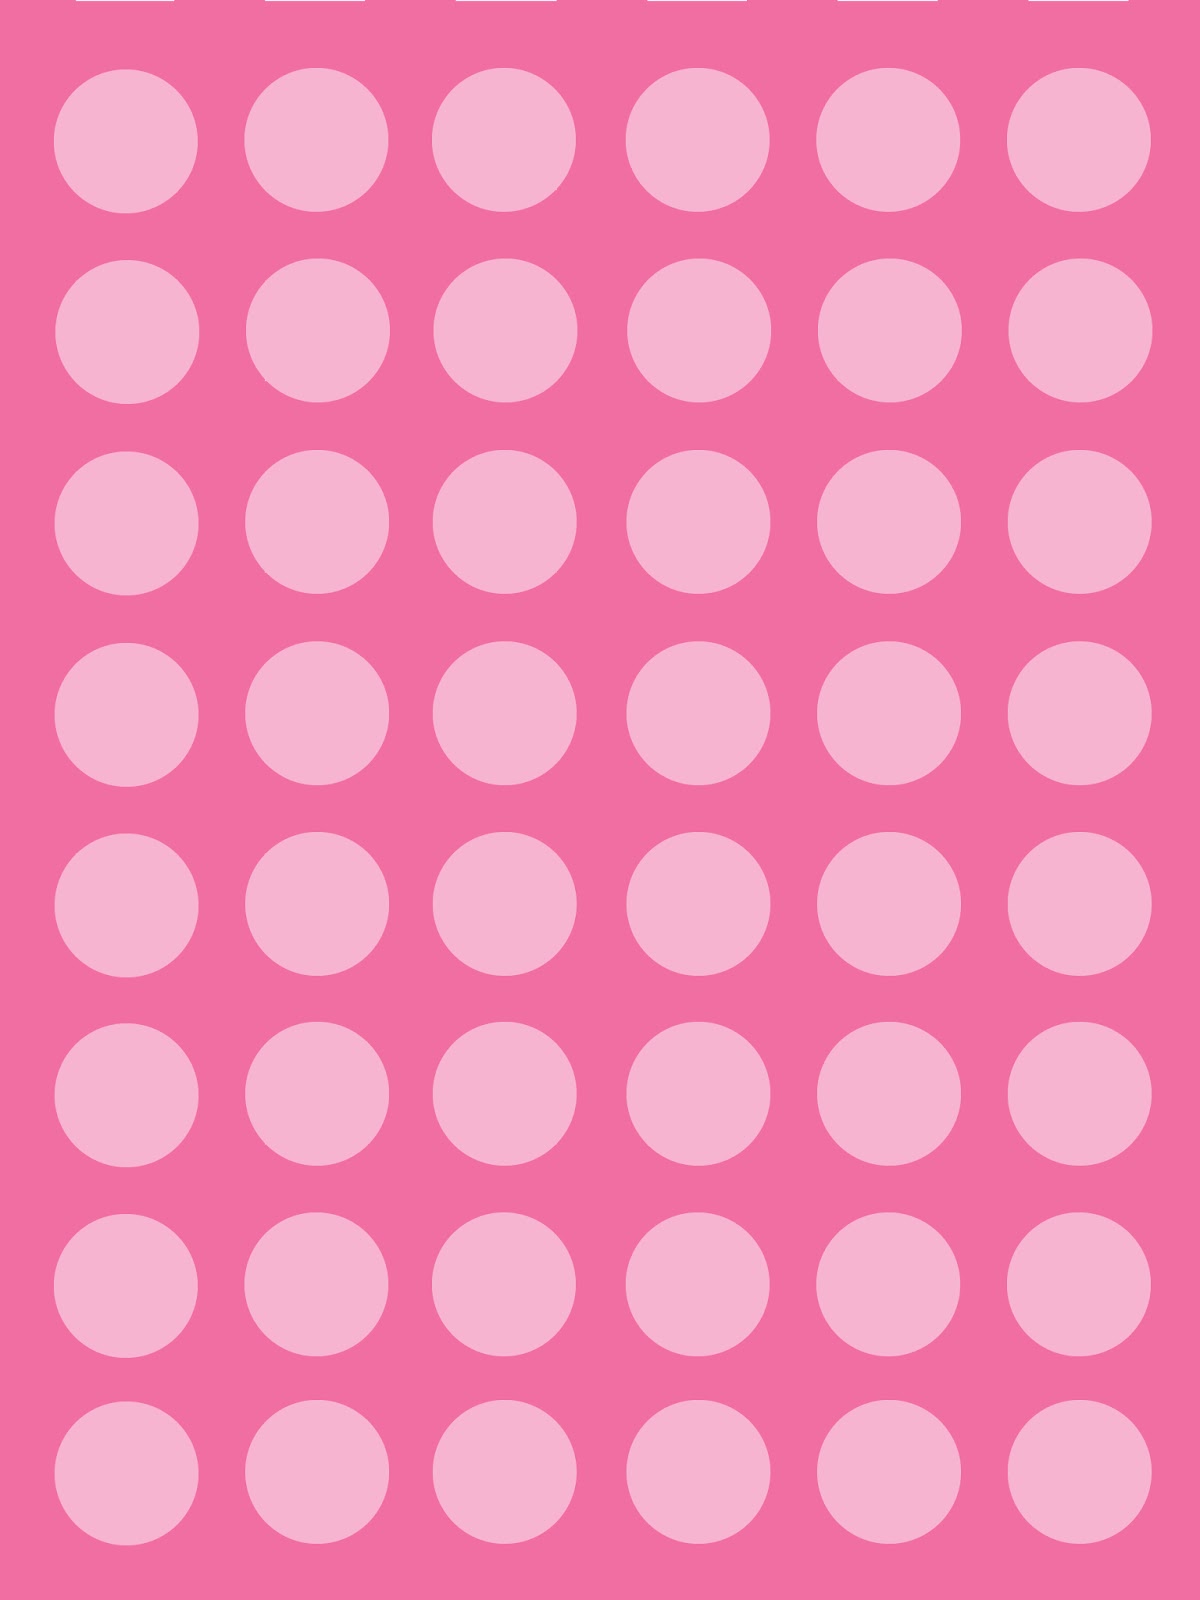 ... URL: http://hdwallpaperslatest.com/polka-dot-wallpaper-backgrounds